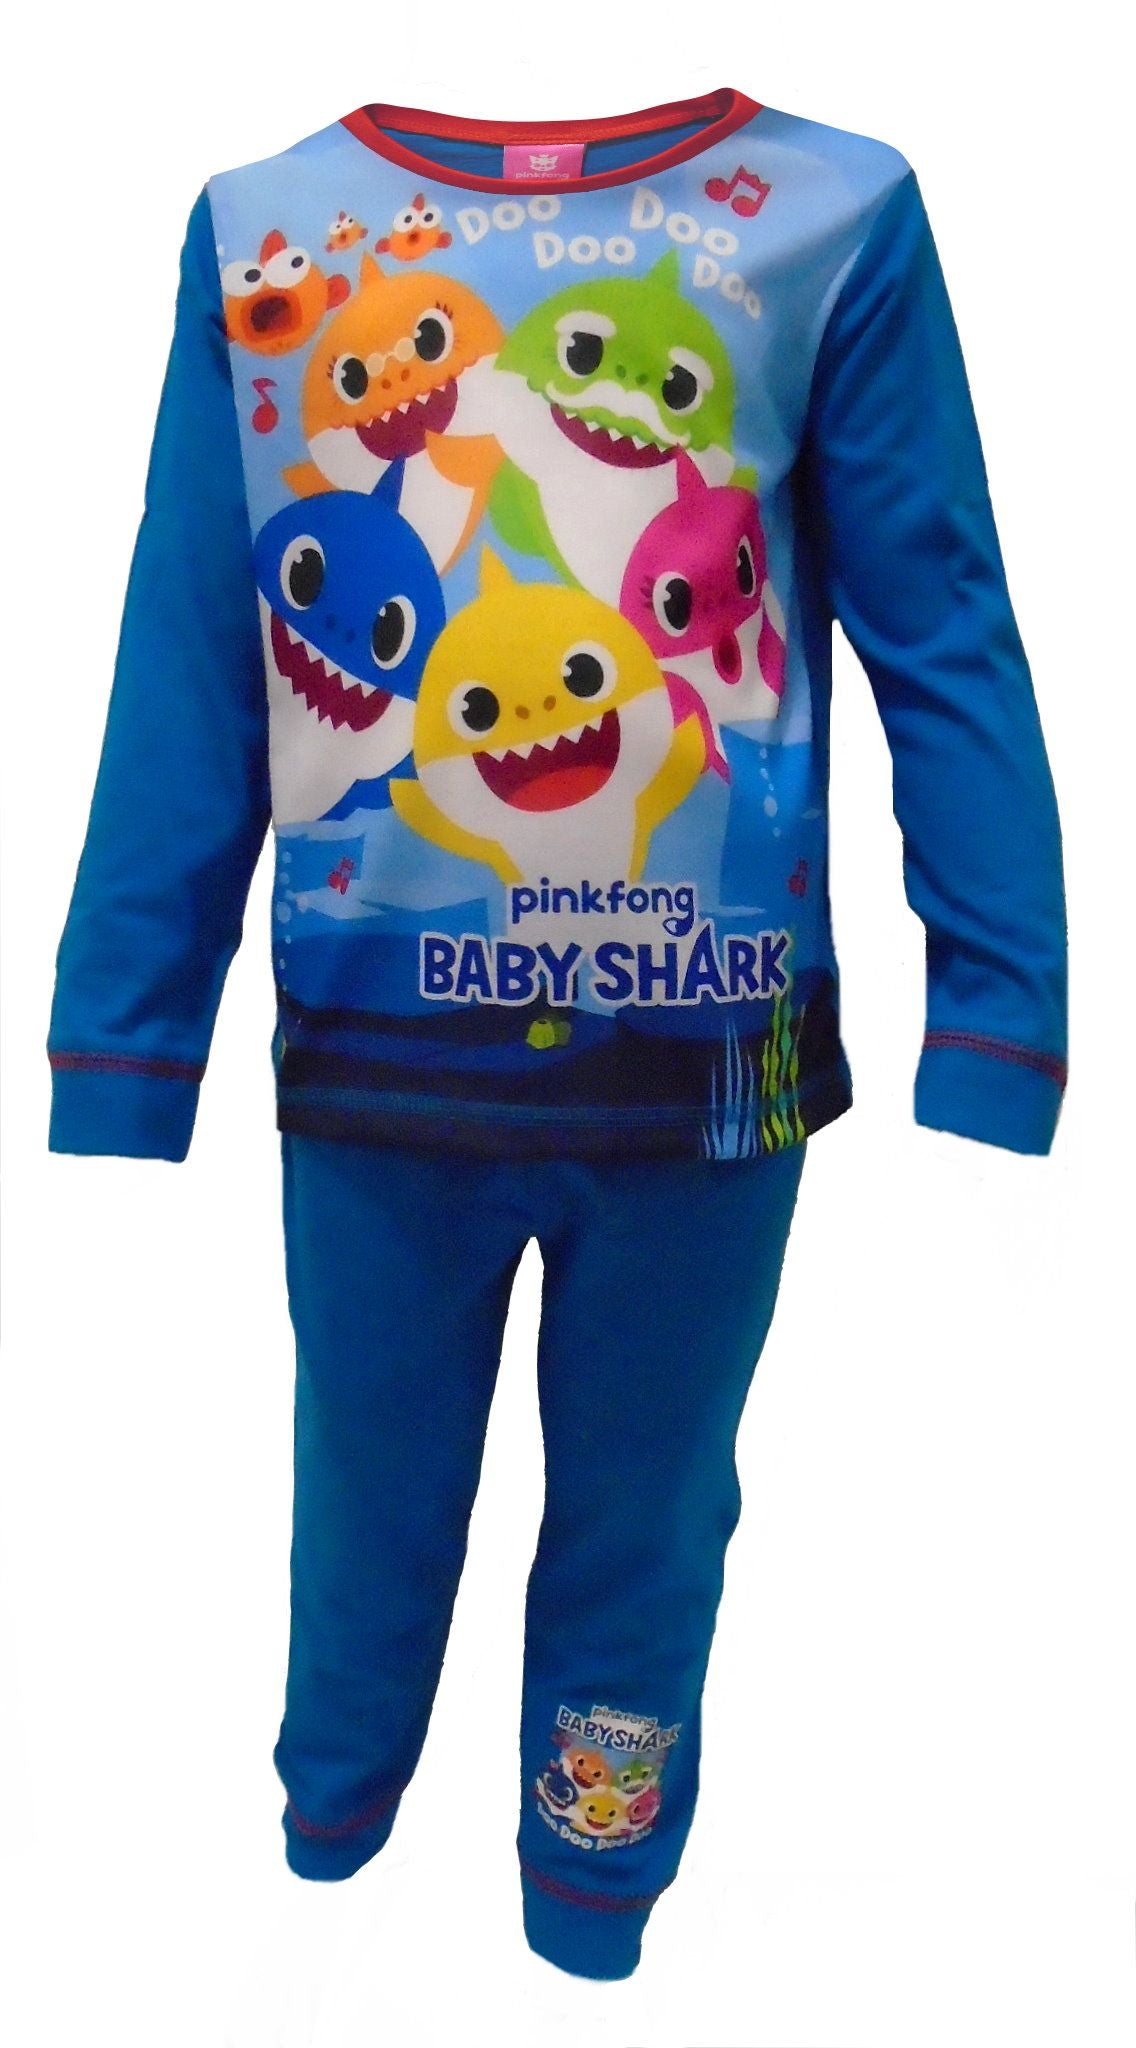 Baby Shark "Doo Doo Doo" Boys Pyjamas